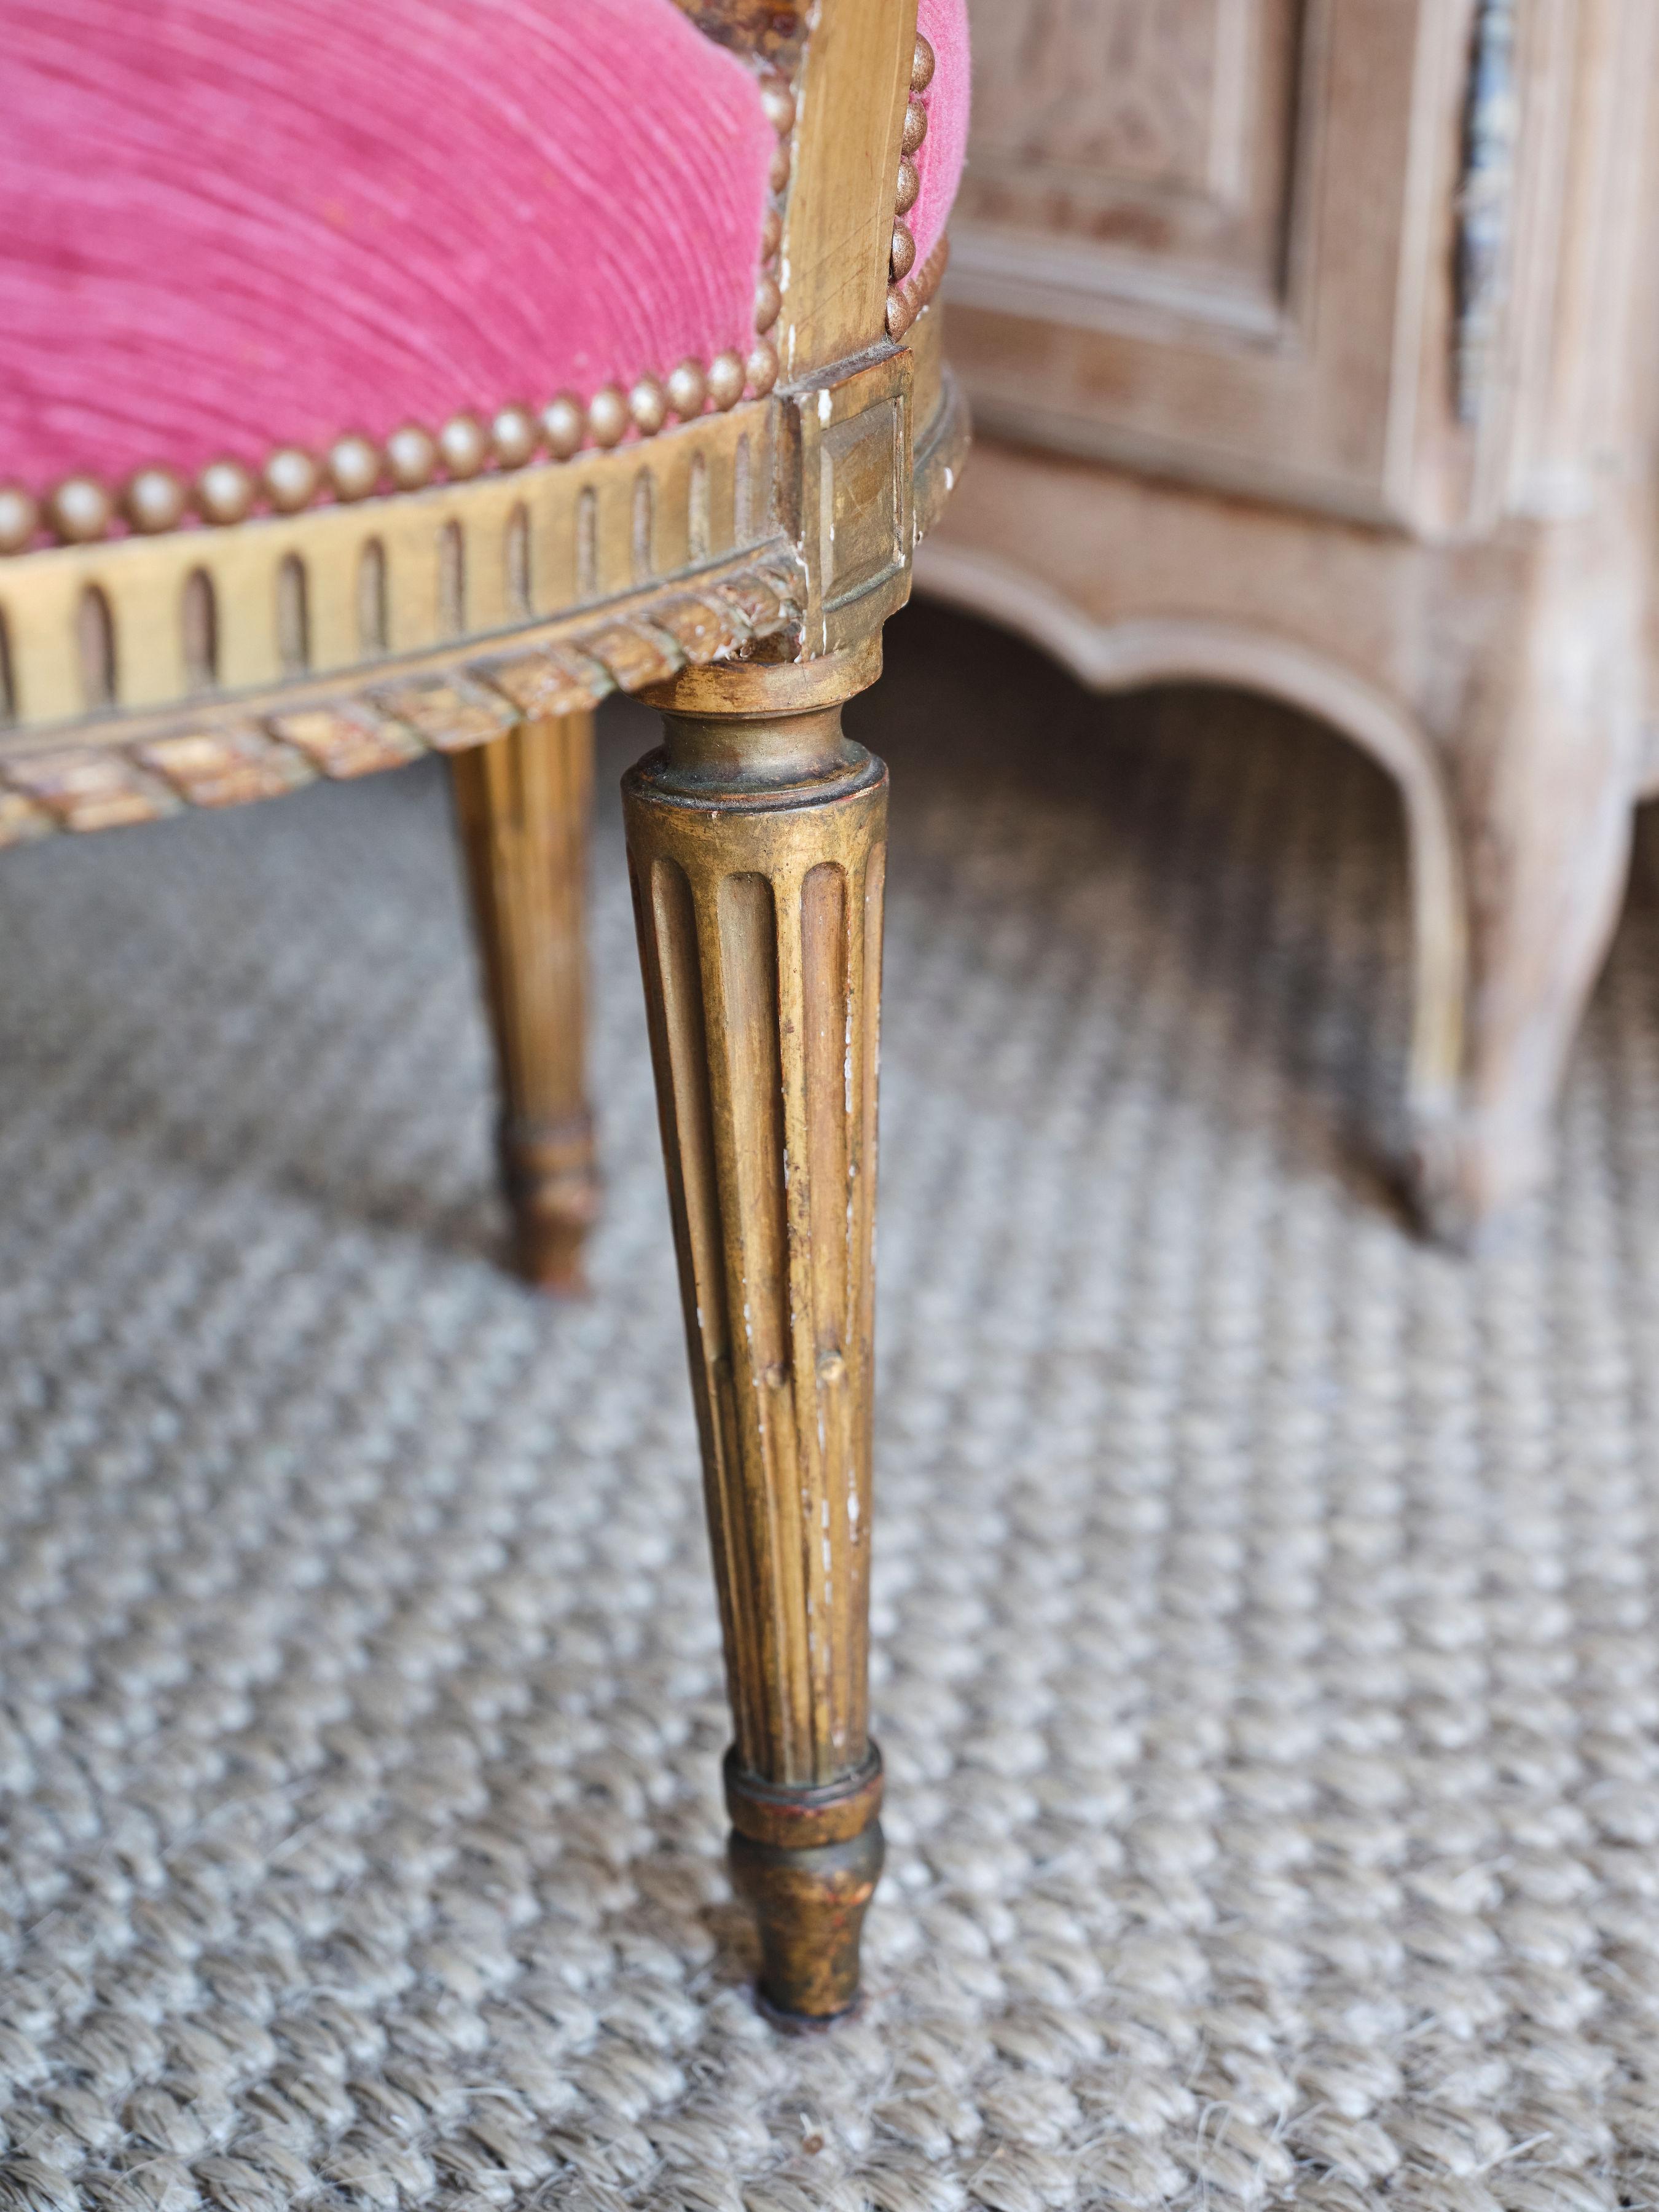 Diese umwerfenden rosafarbenen Sessel aus dem 18. Jahrhundert sind ein echter Hingucker und setzen ein Zeichen! Die Stühle stammen aus der Zeit Ludwigs XVI. und sind über und über mit Schnitzereien verziert. Die Beine des Stuhls sind mit gefütterten